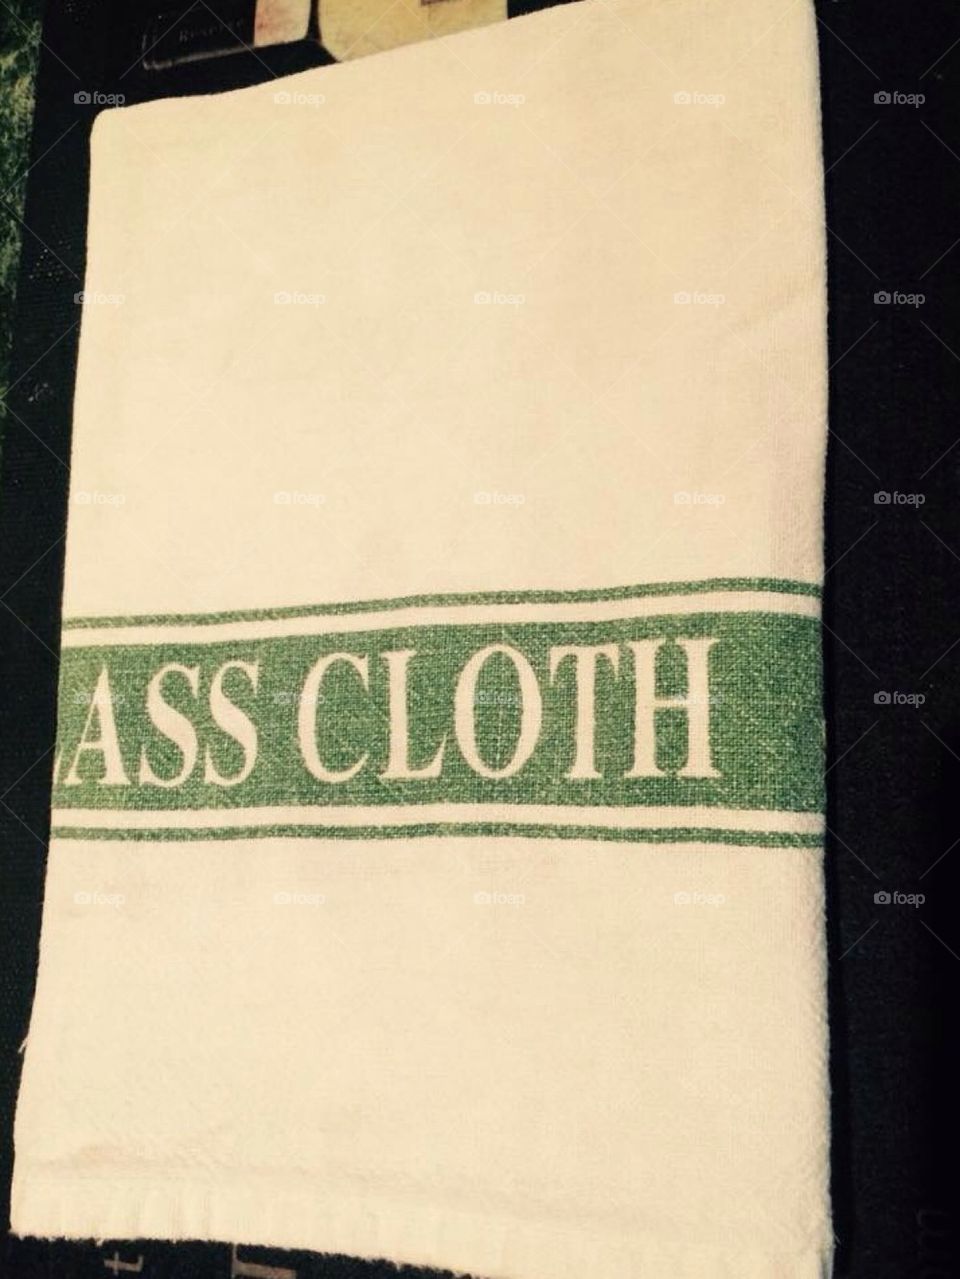 Ass cloth